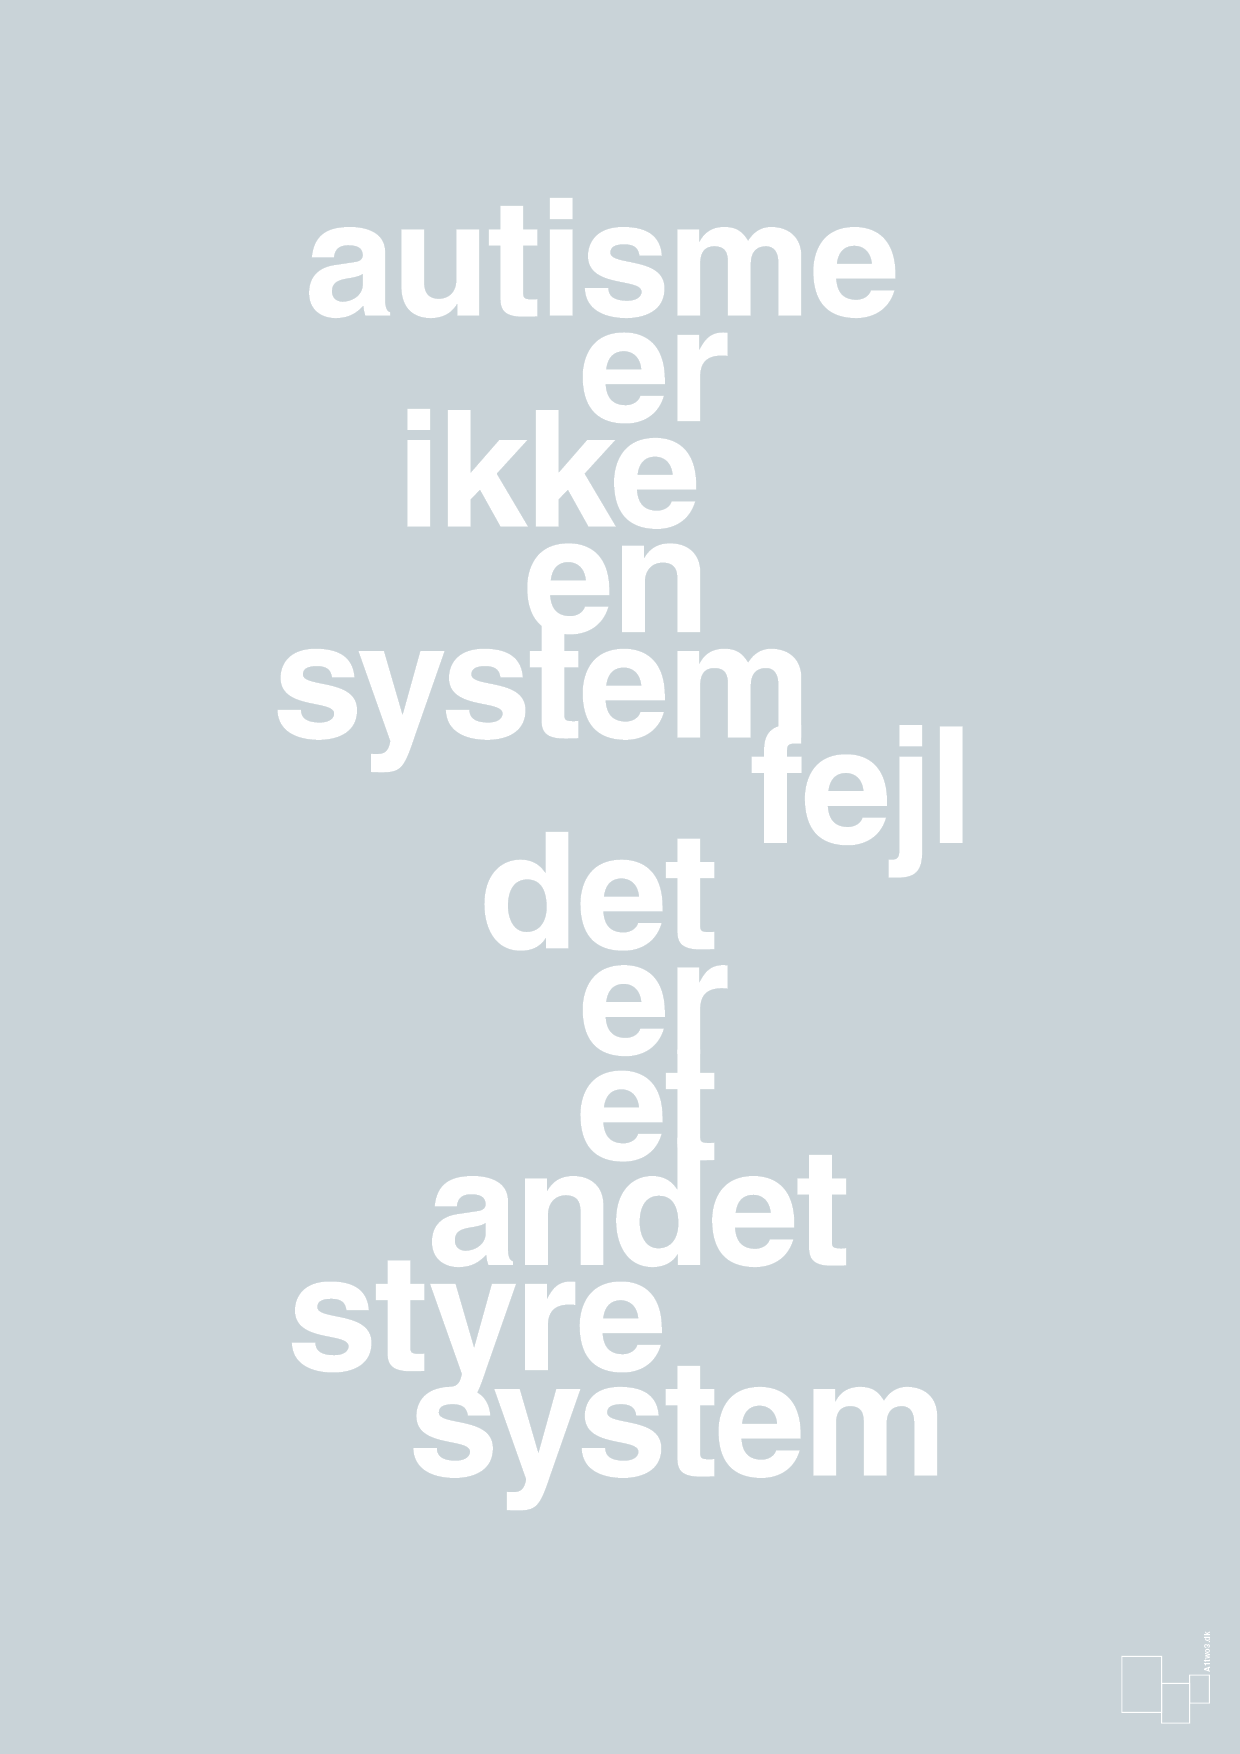 autisme er ikke en systemfejl - Plakat med Samfund i Light Drizzle